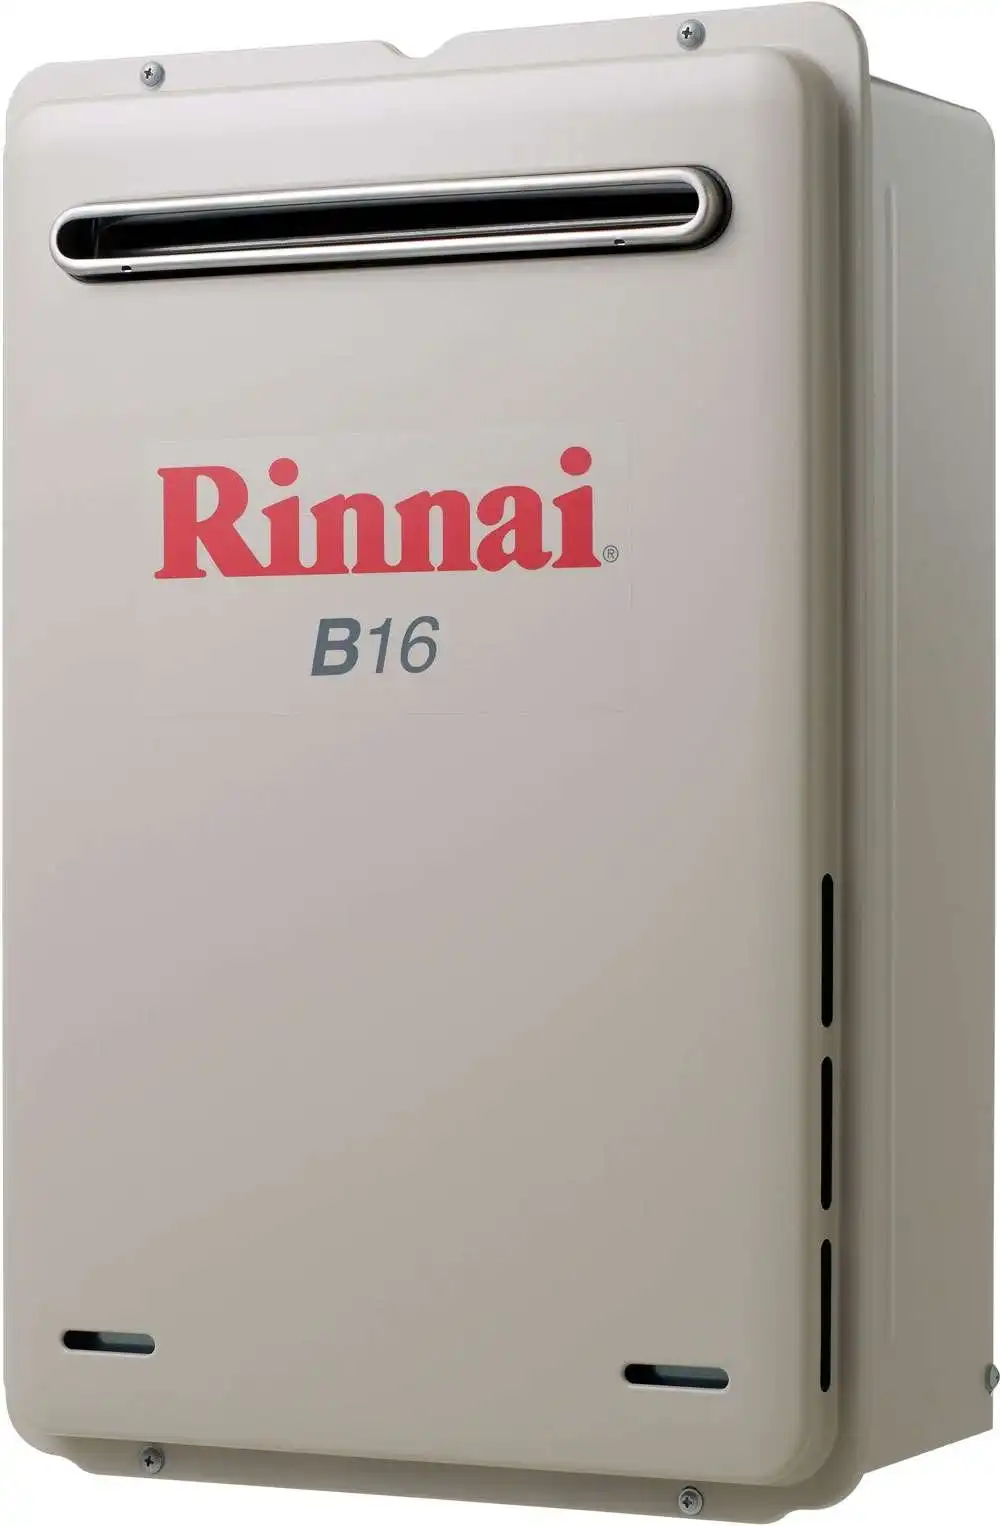 Rinnai Builders 60oC 16L Instant Hot Water System B16L60A B16 *LPG GAS*